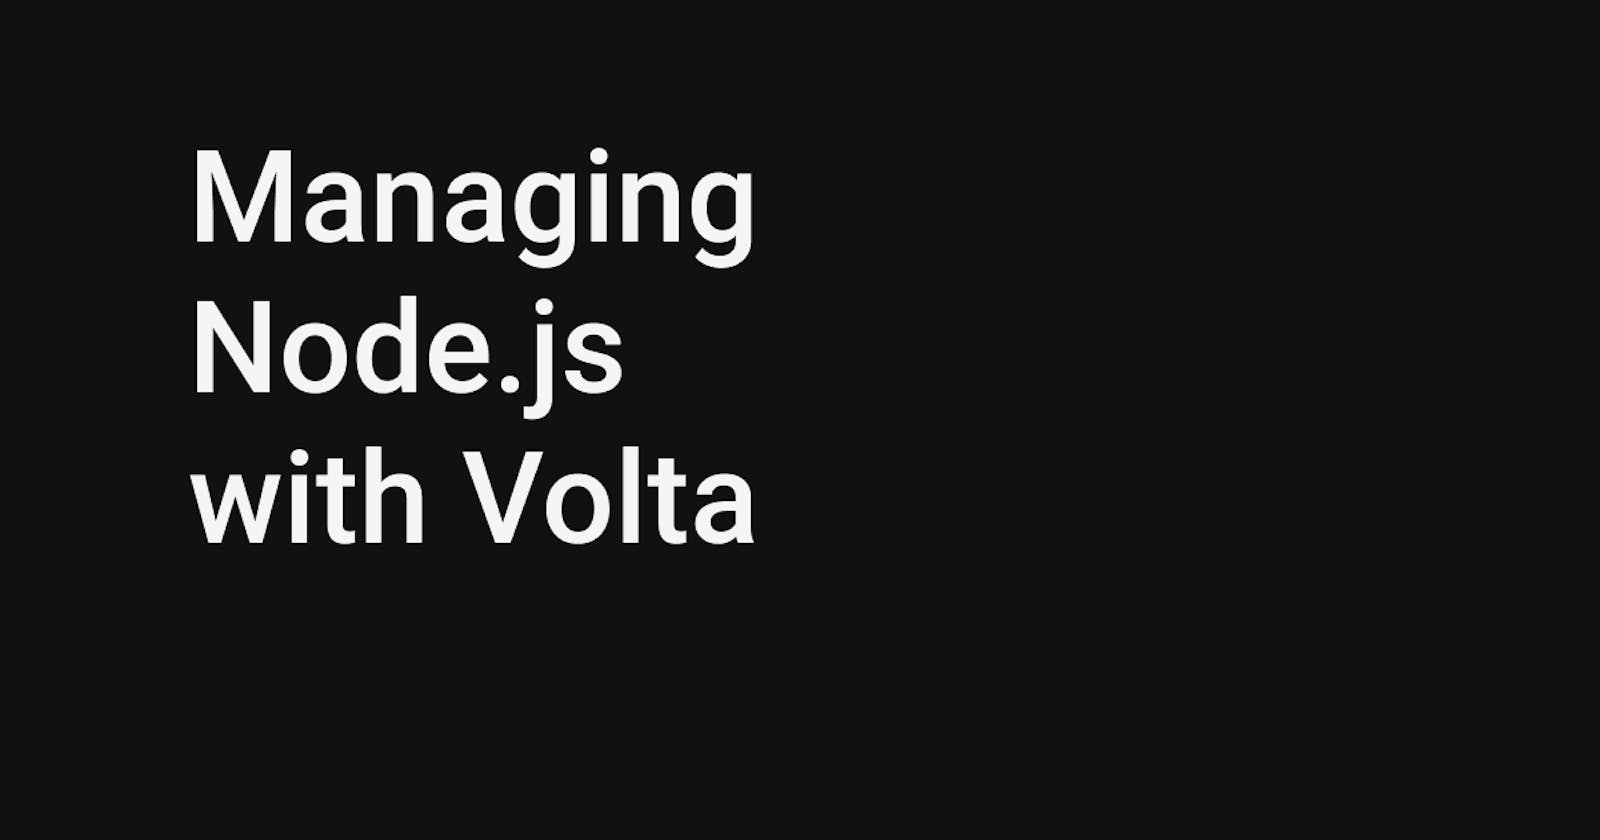 Managing Node.js with Volta